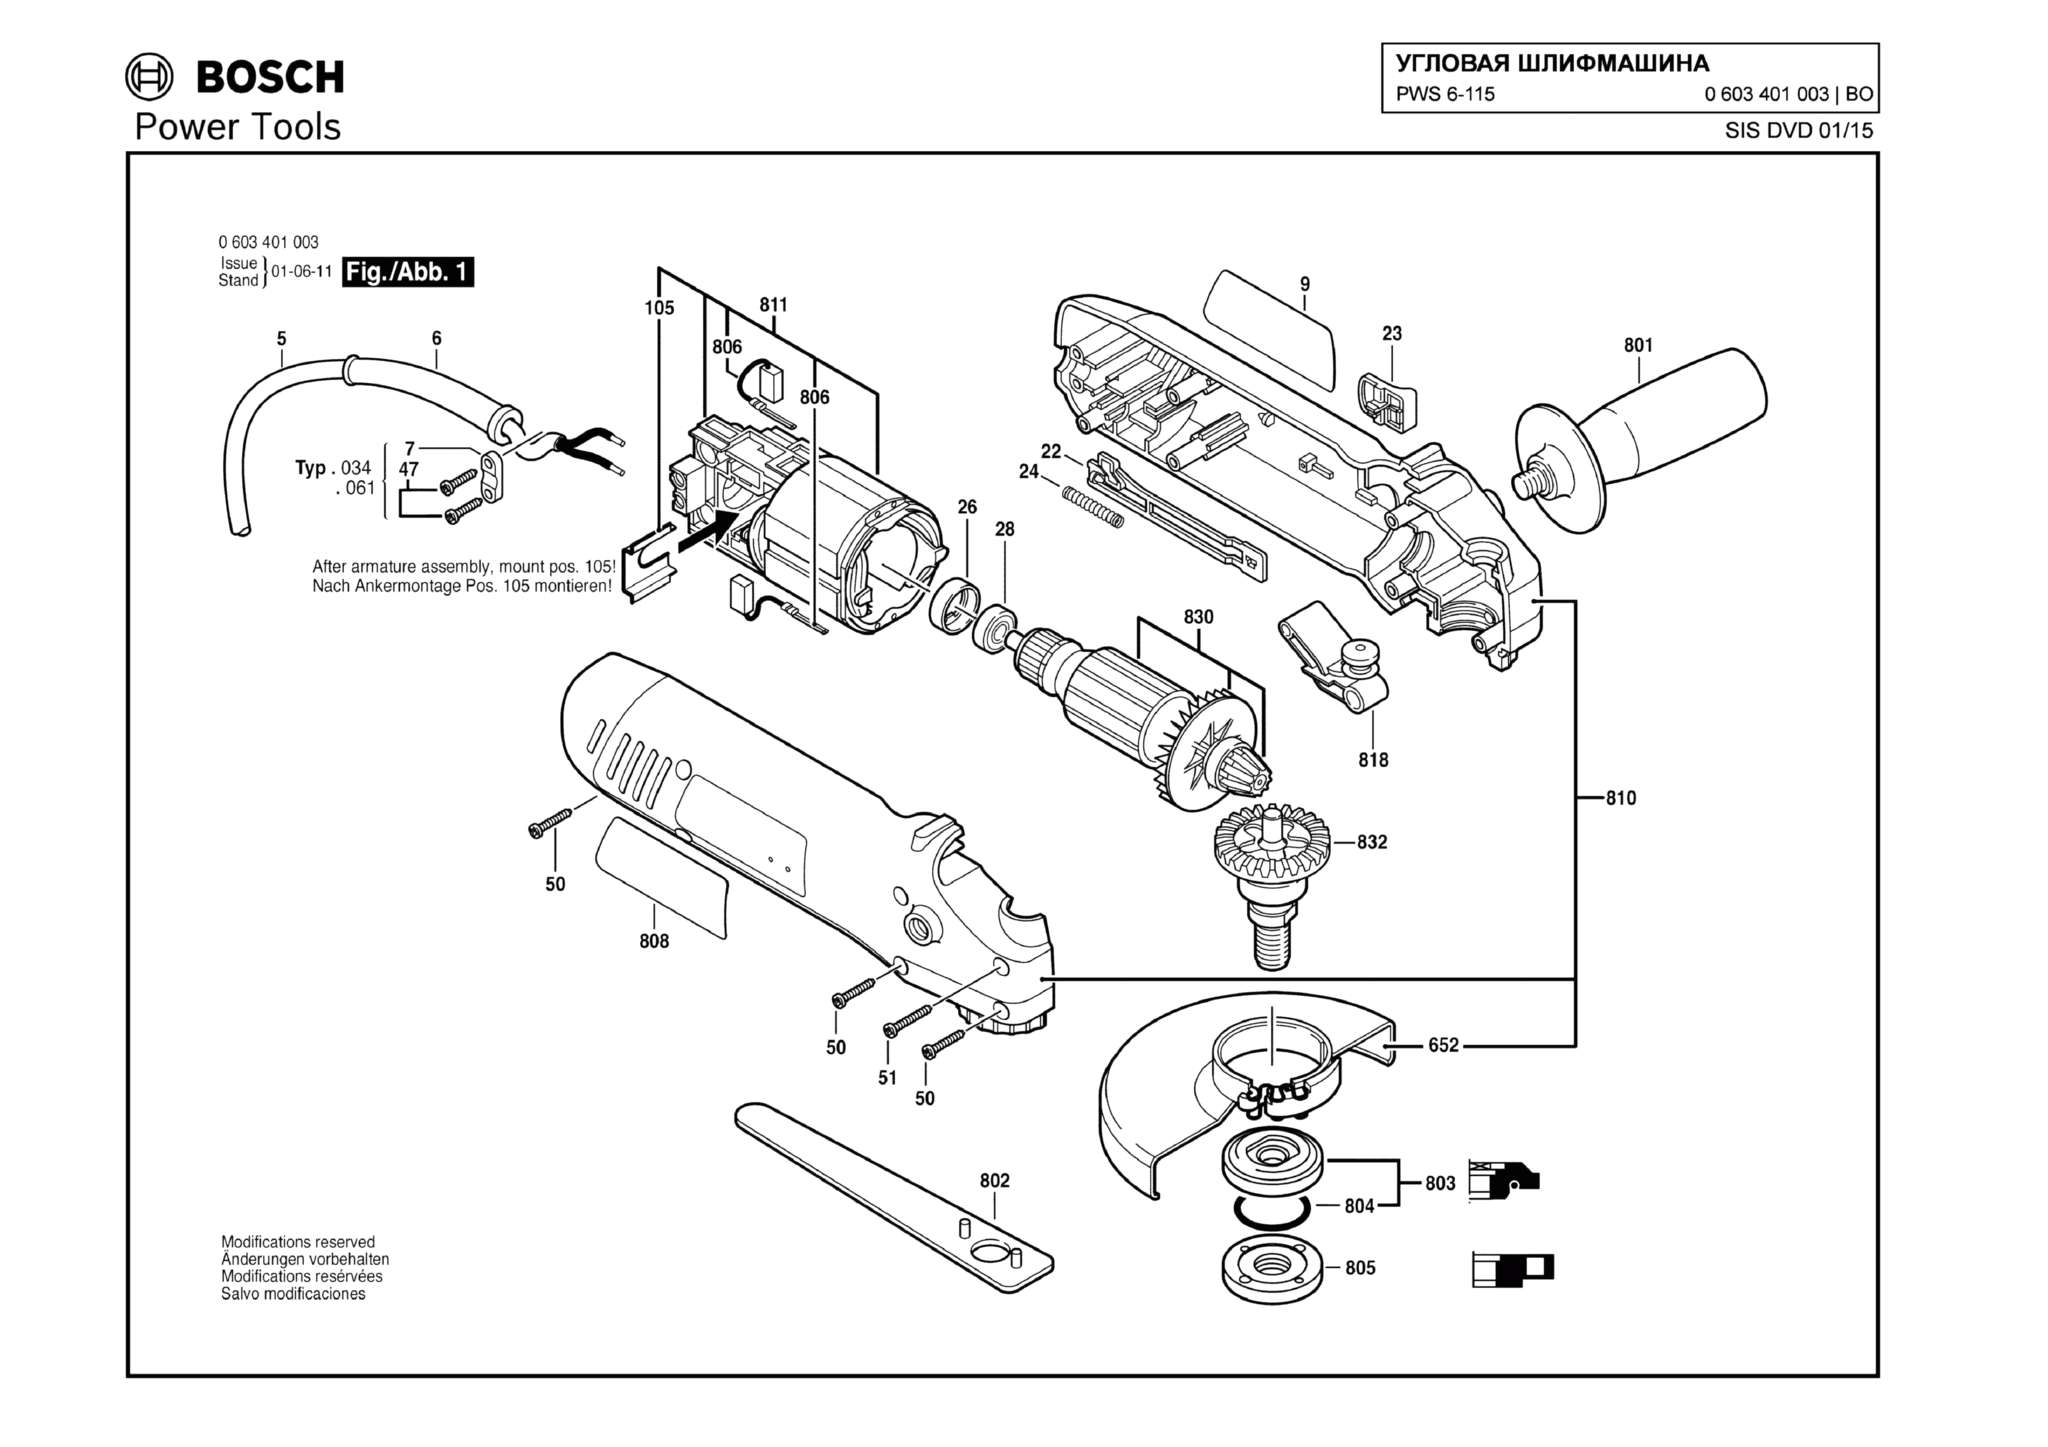 Запчасти, схема и деталировка Bosch PWS 6-115 (ТИП 0603401003)